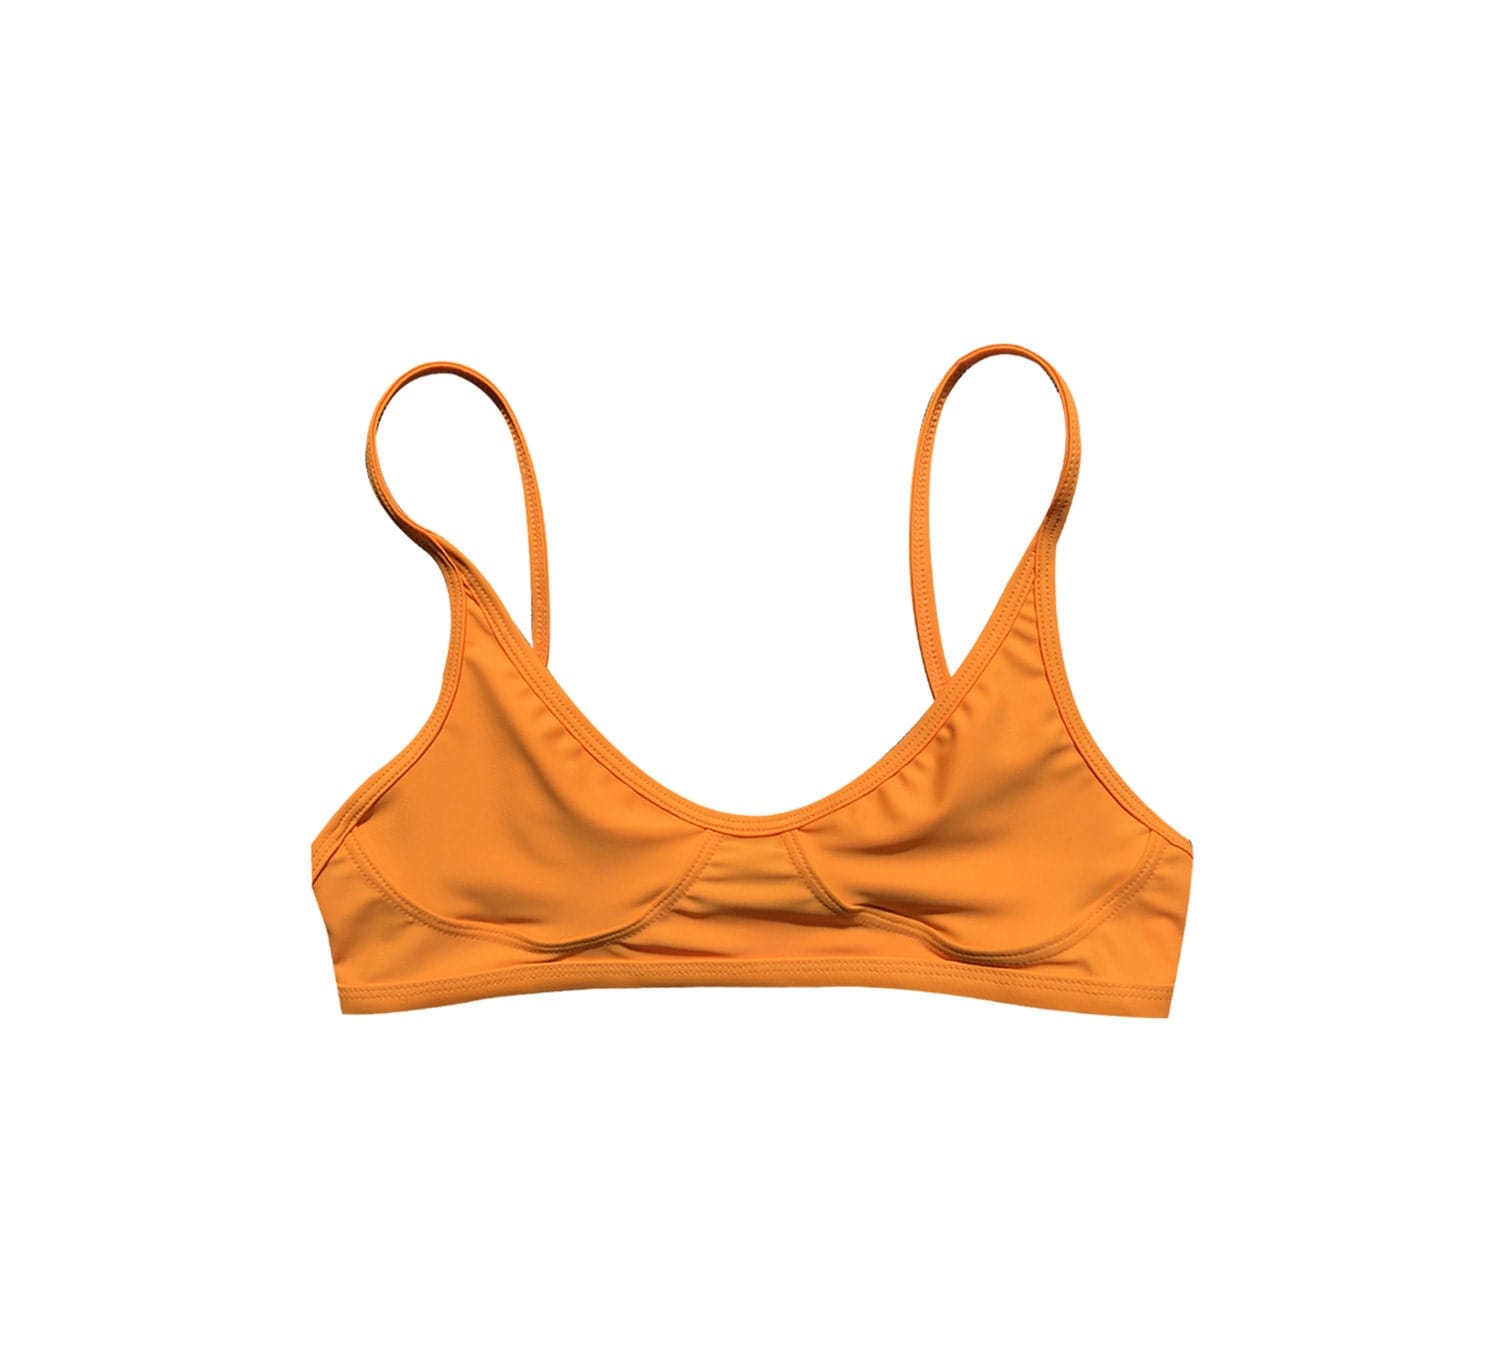 NEW Teardrop Crop Top Solar orange bikini bikini by GNASHswim